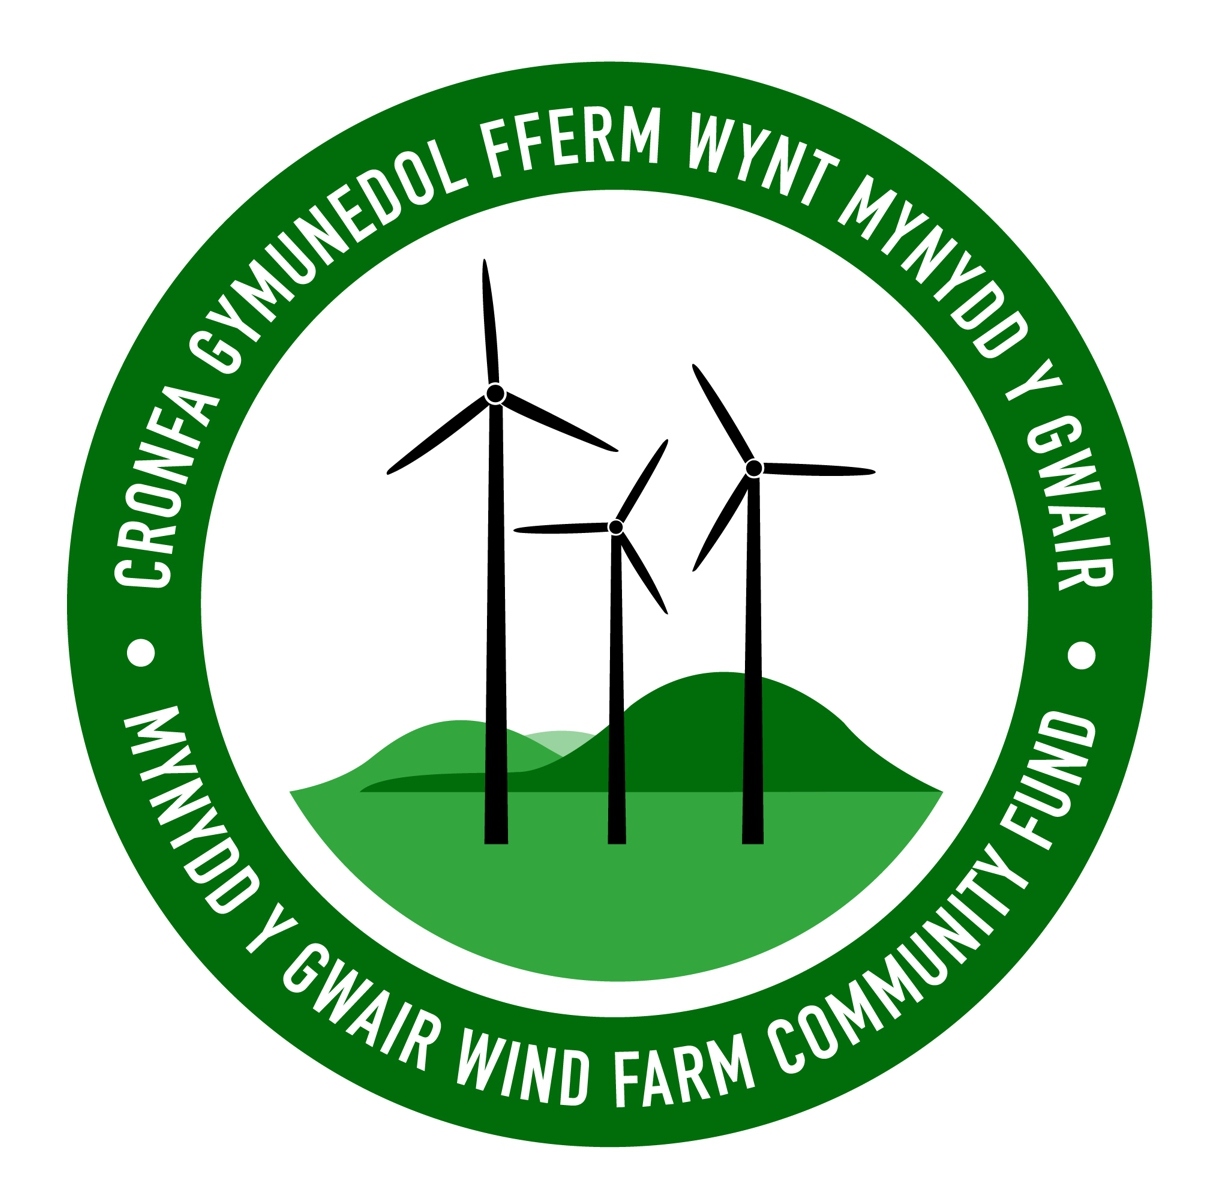 Mynydd Y Gwair Wind Farm Community Fund